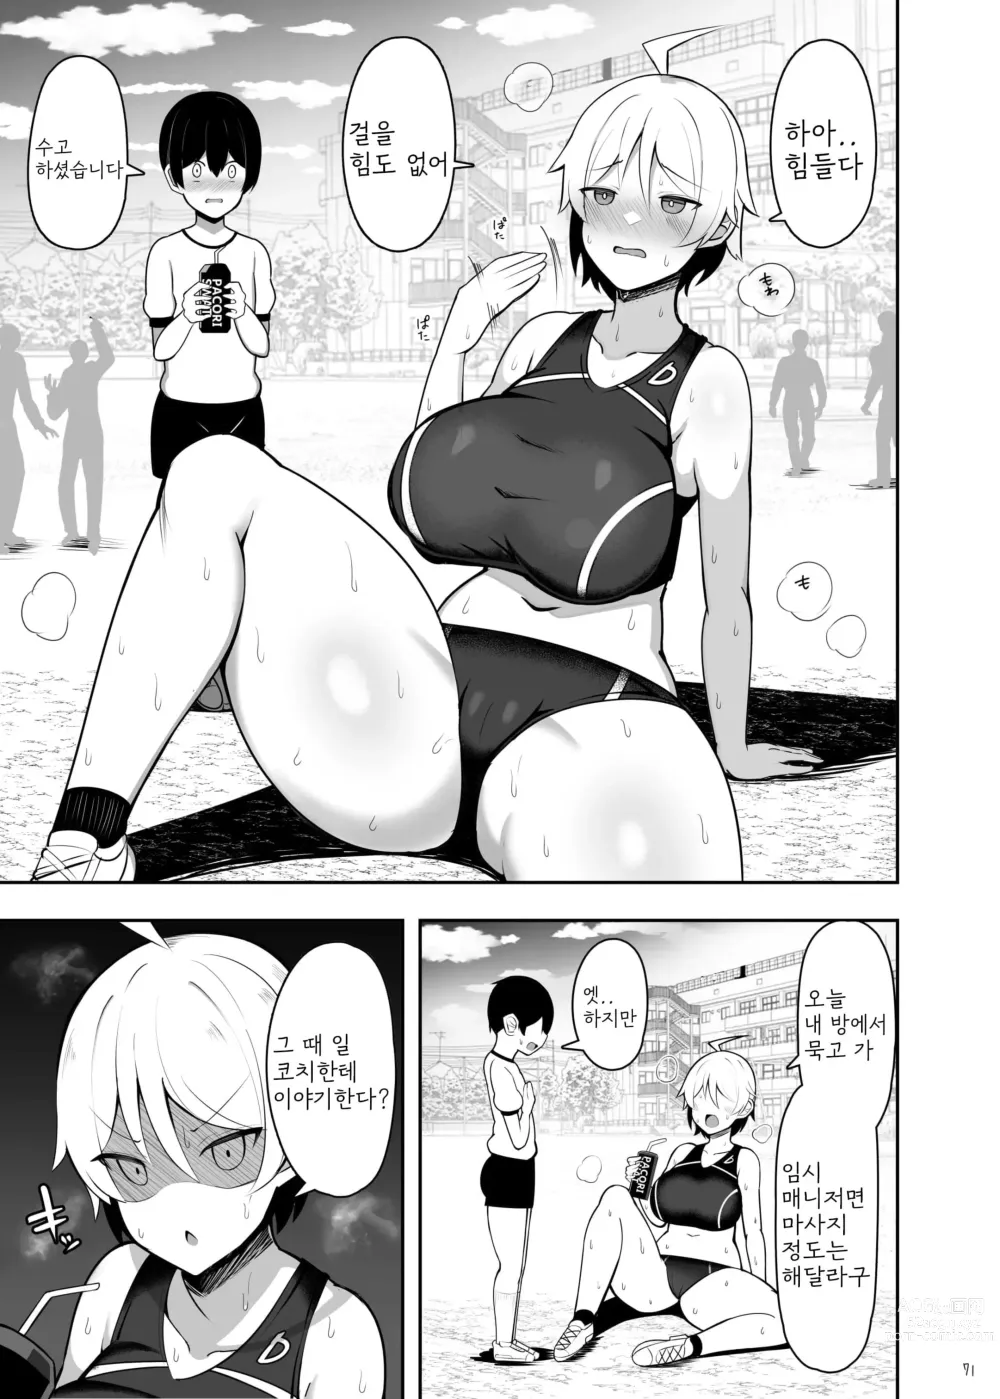 Page 71 of doujinshi 누나와 엄마와 진심교미